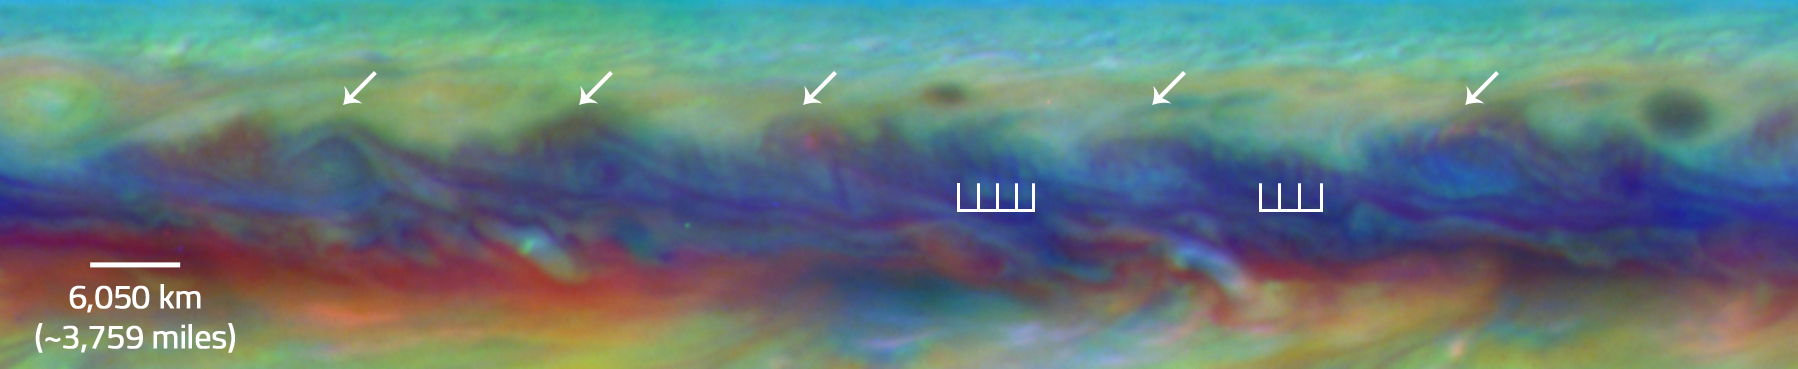 rare wave patter in Jupiter's North Equatorial Belt